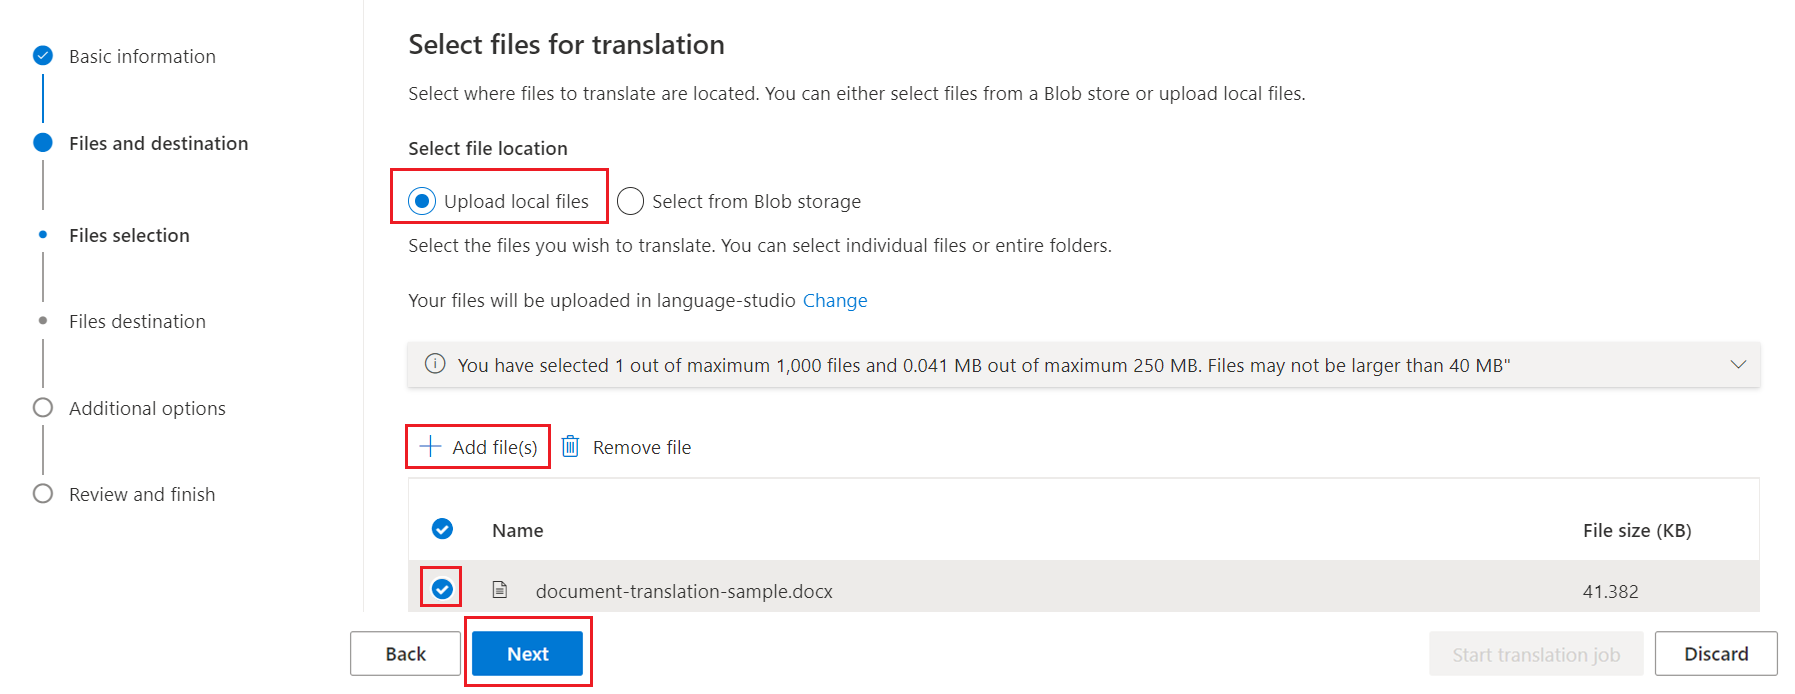 Képernyőkép a fordításhoz szükséges fájlok kiválasztásáról.